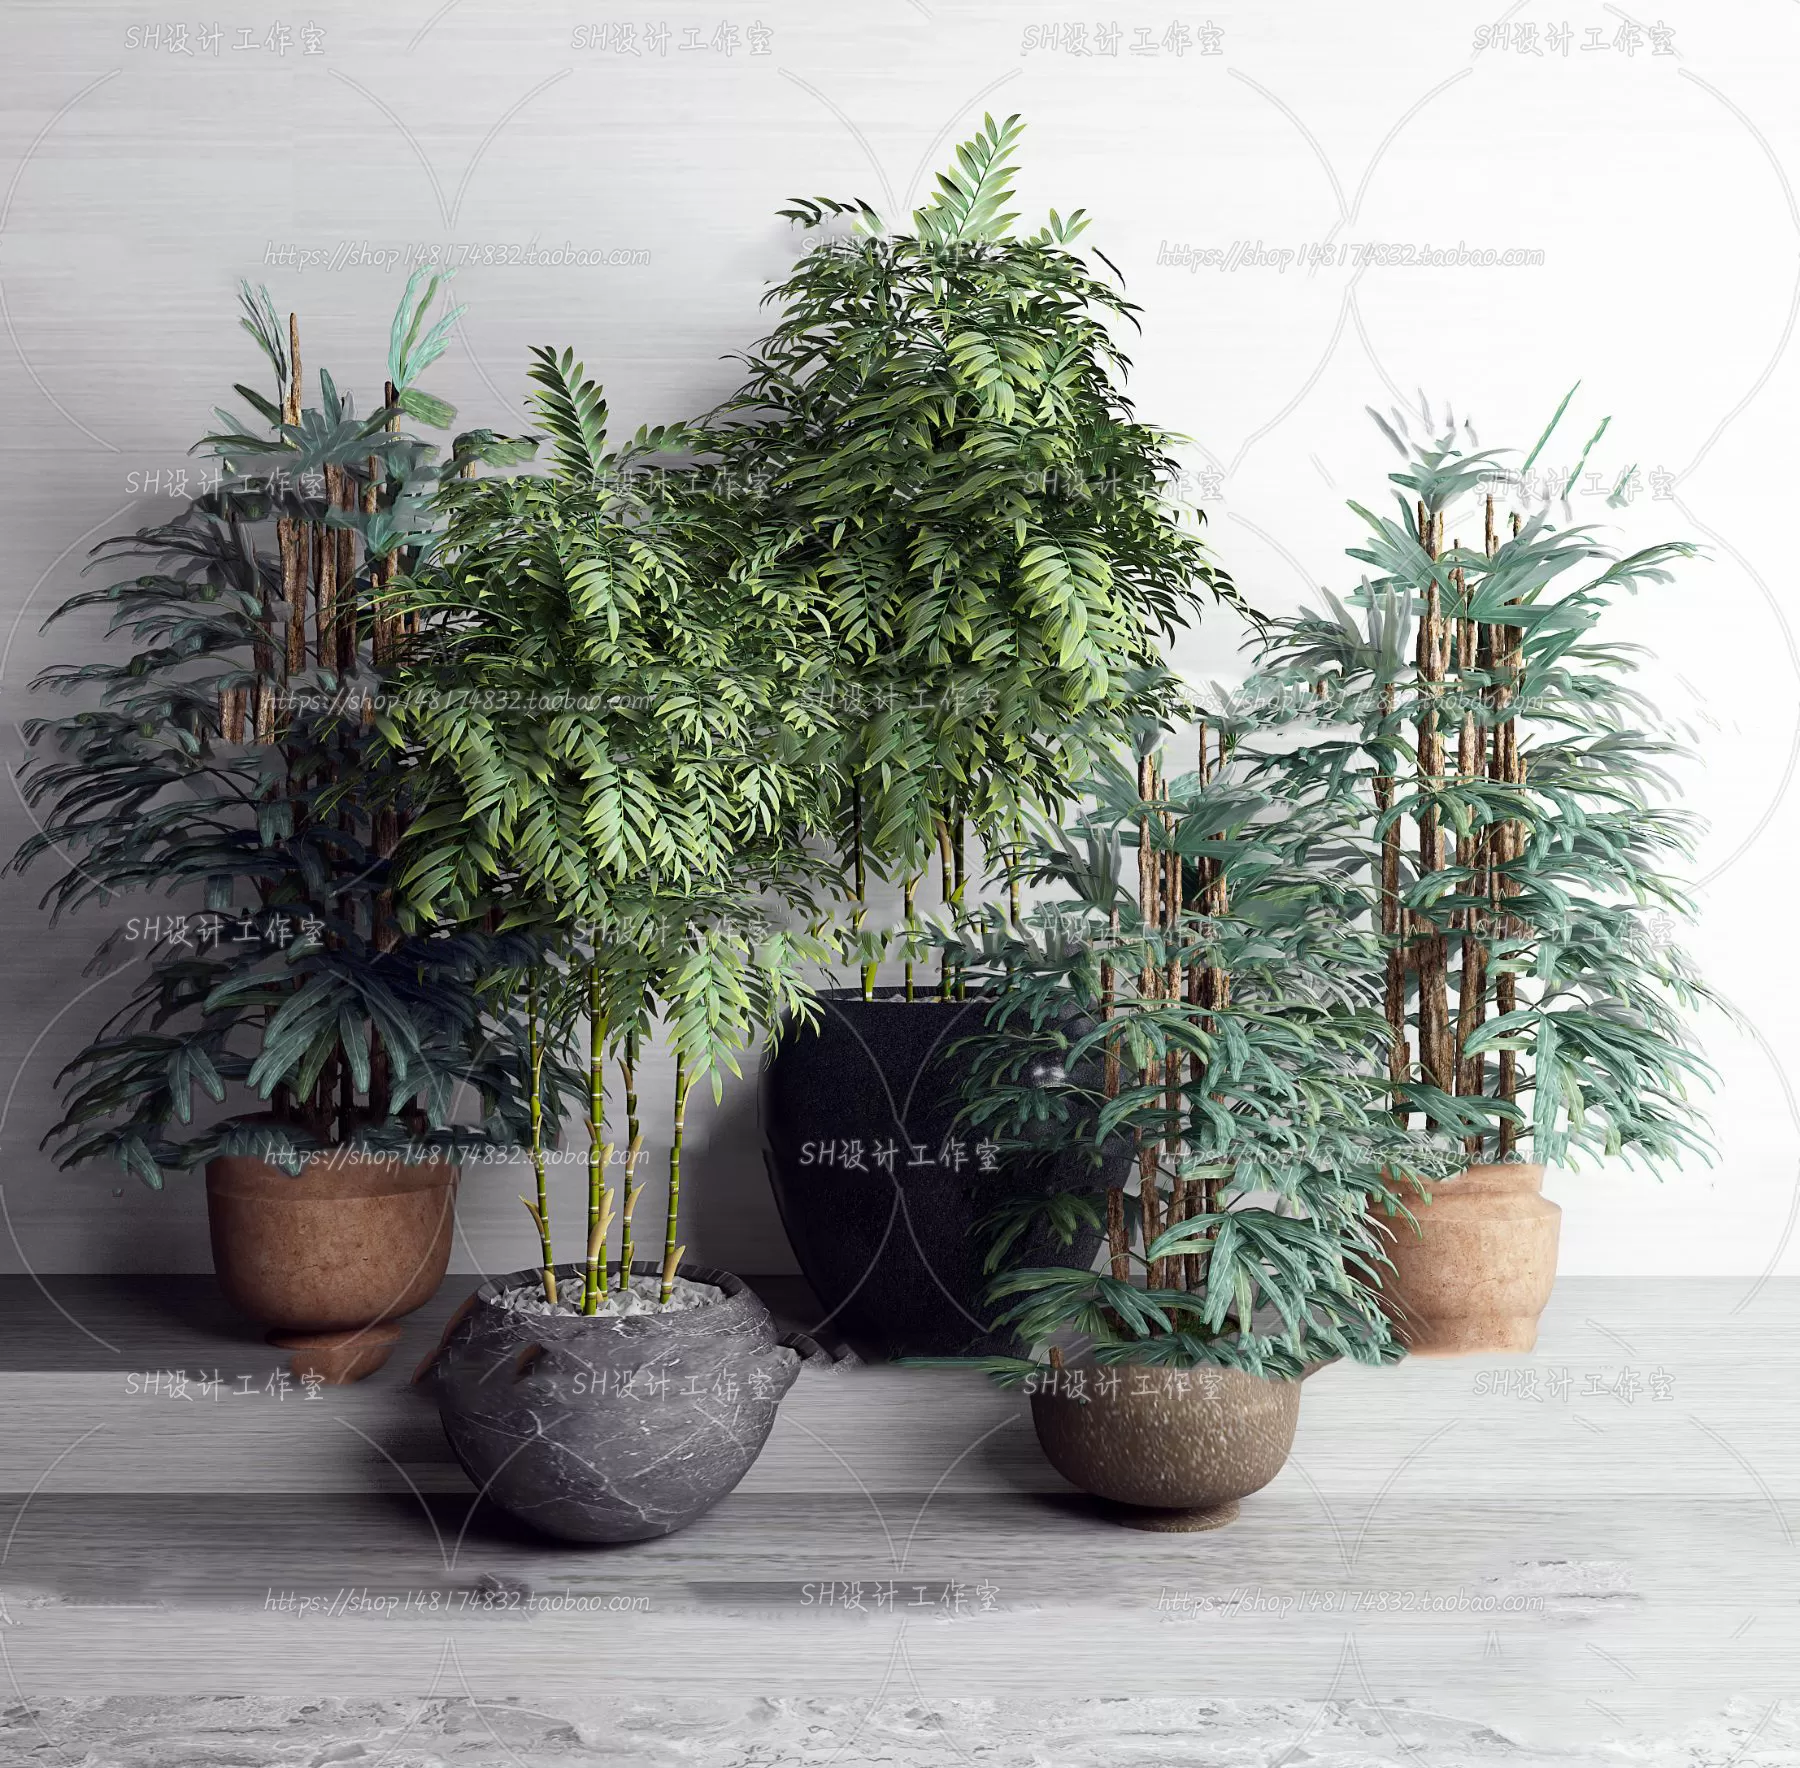 PLANT 3D MODELS – 070